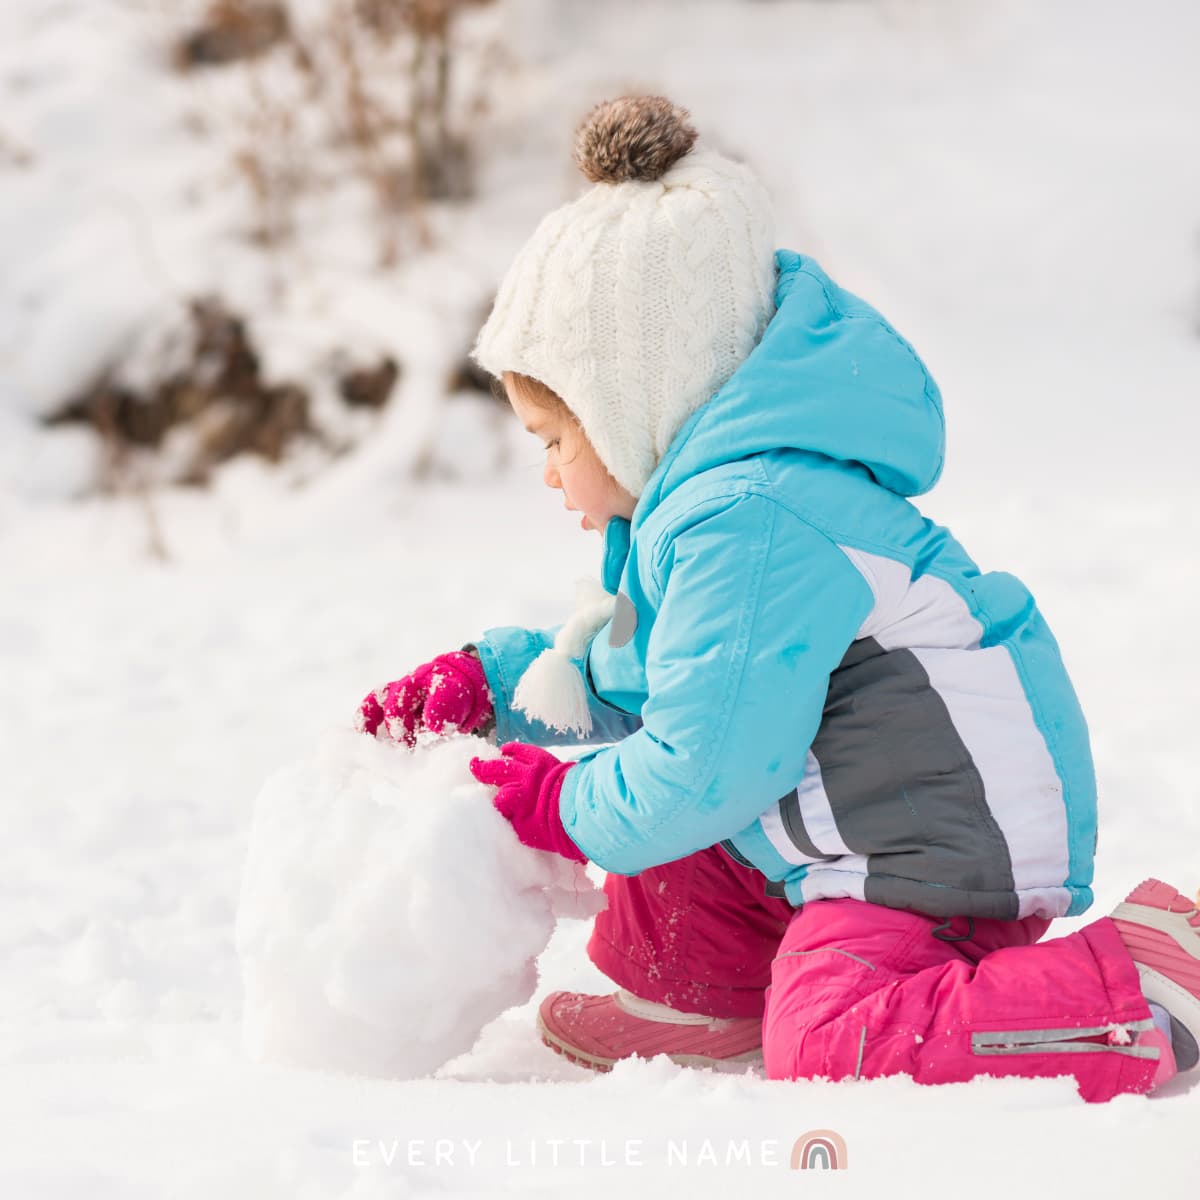 Child building snowman.